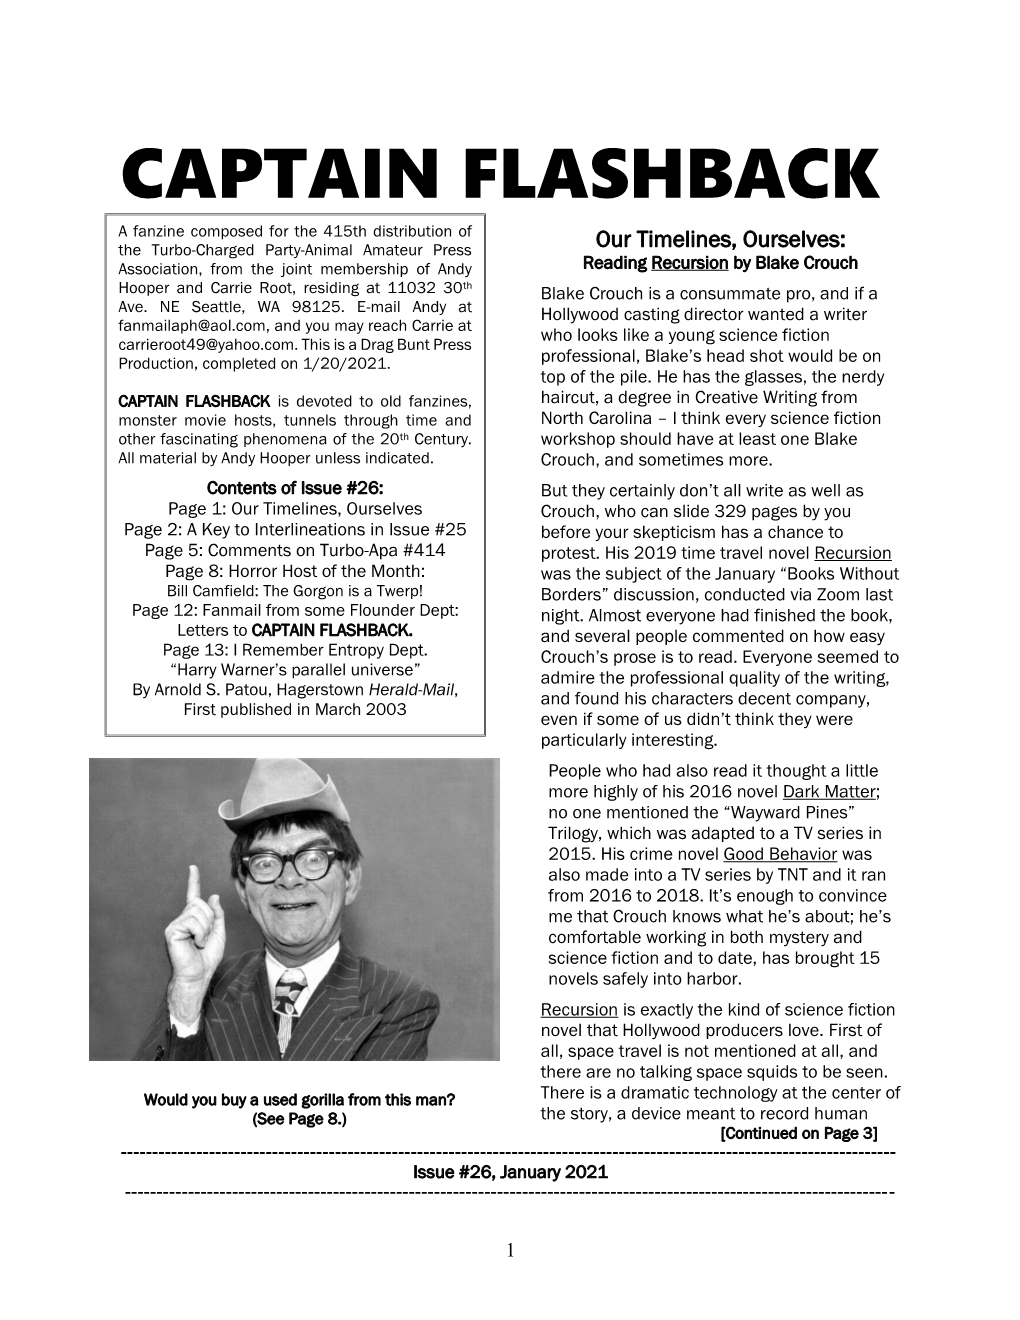 Captain Flashback